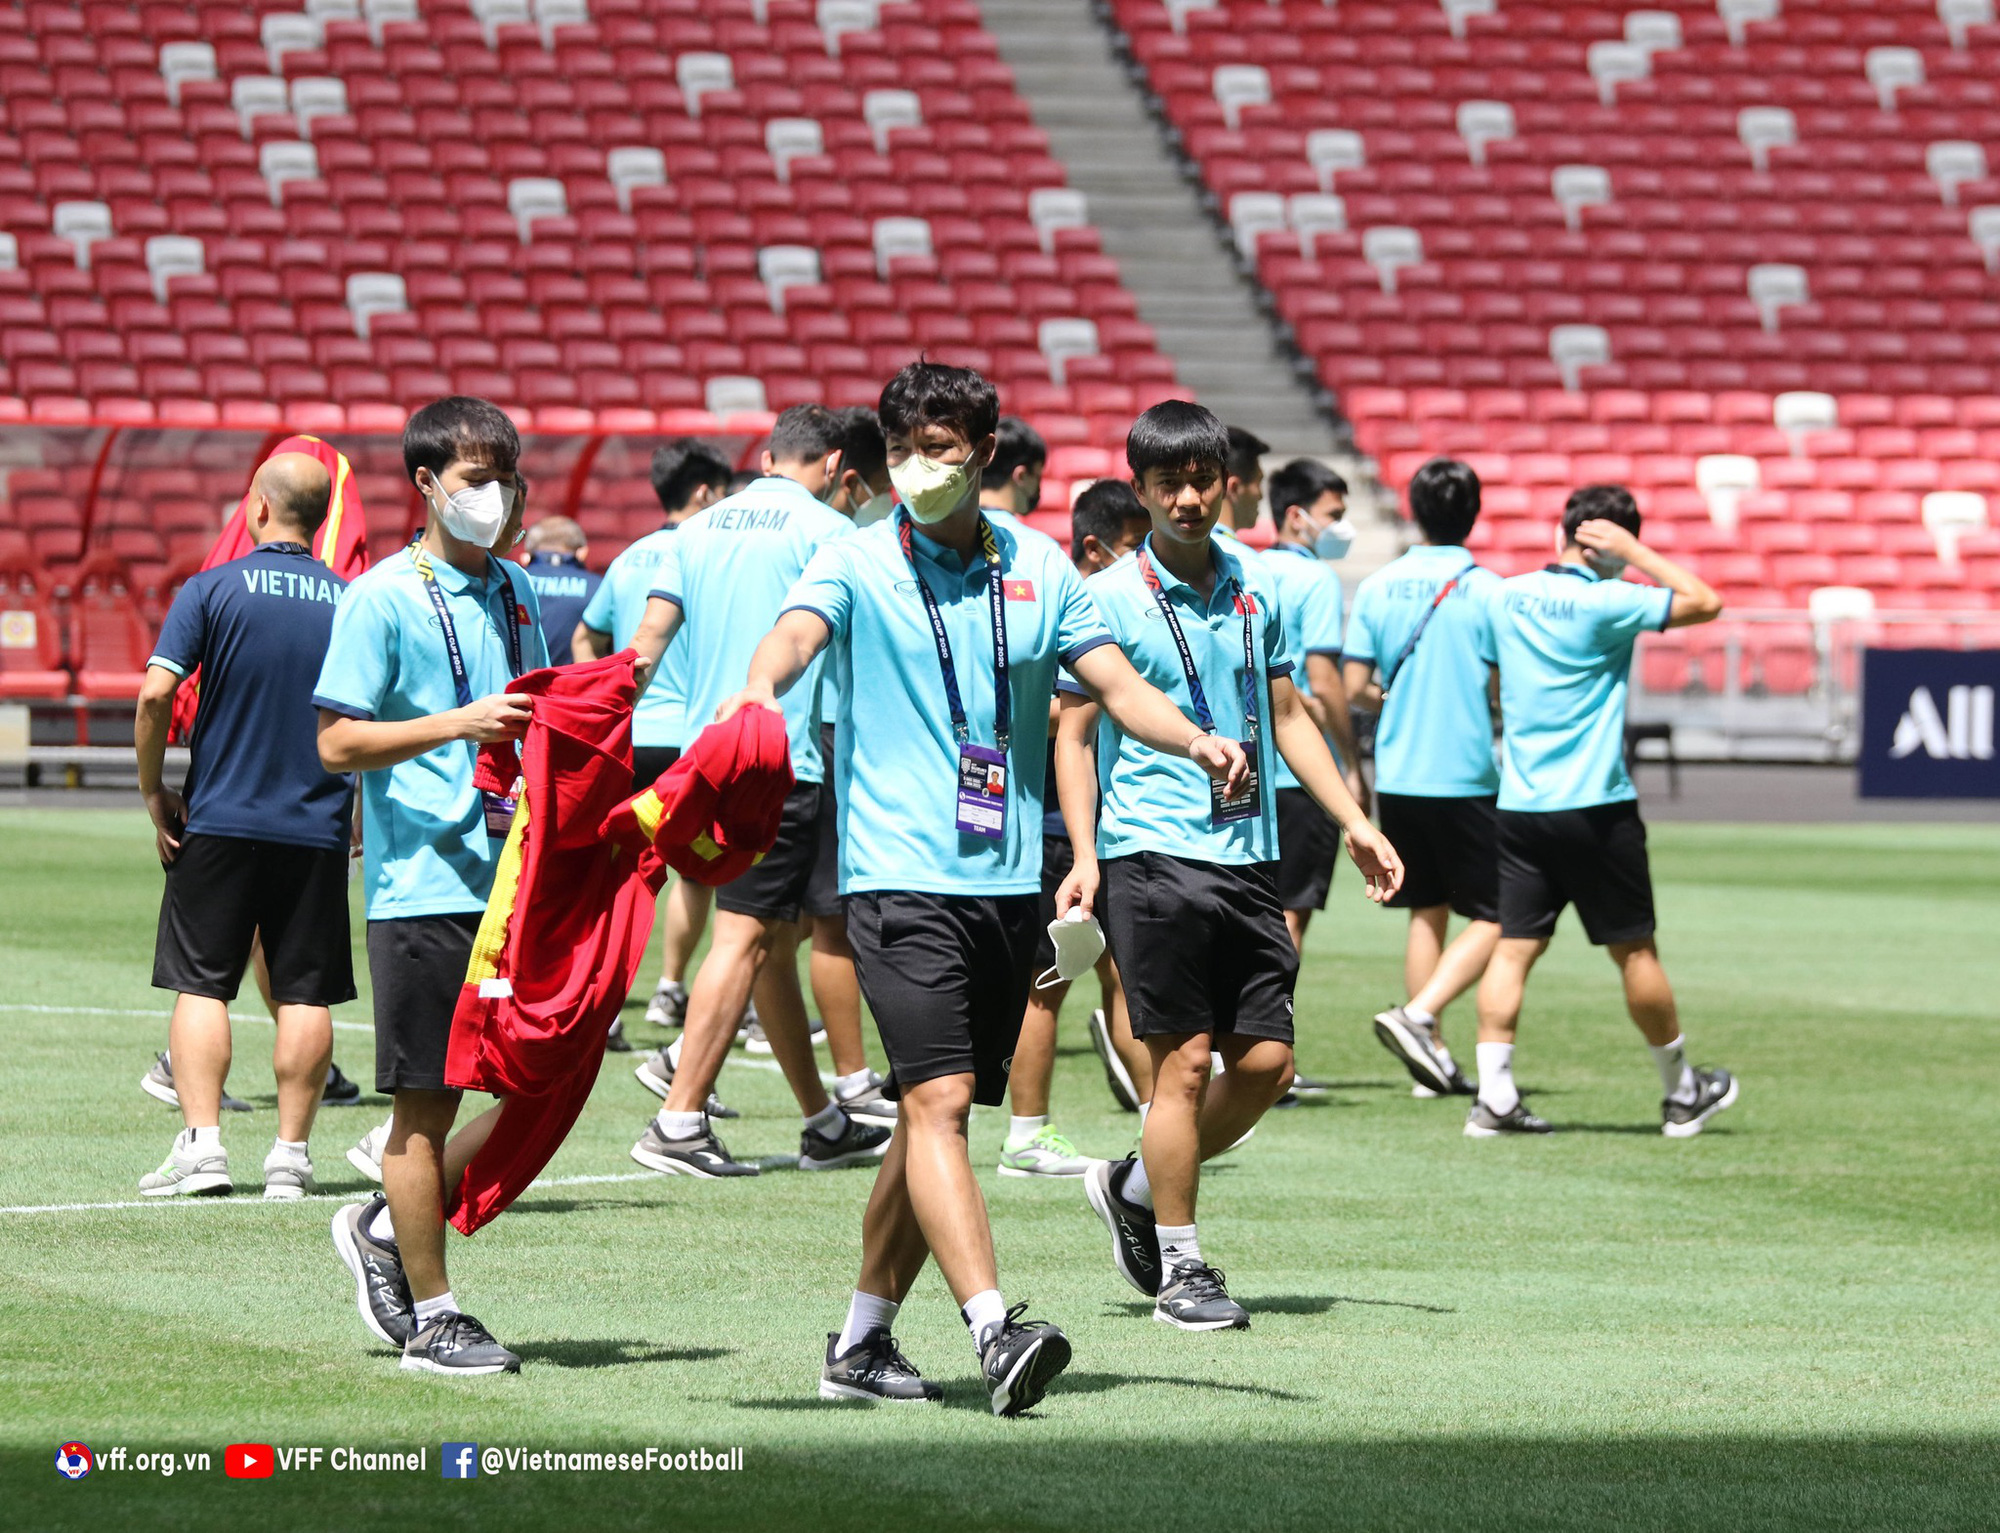 Tuyển Việt Nam đi tham quan SVĐ tổ chức trận bán kết AFF Cup 2020 với Thái Lan giữa trời nắng - Ảnh 4.